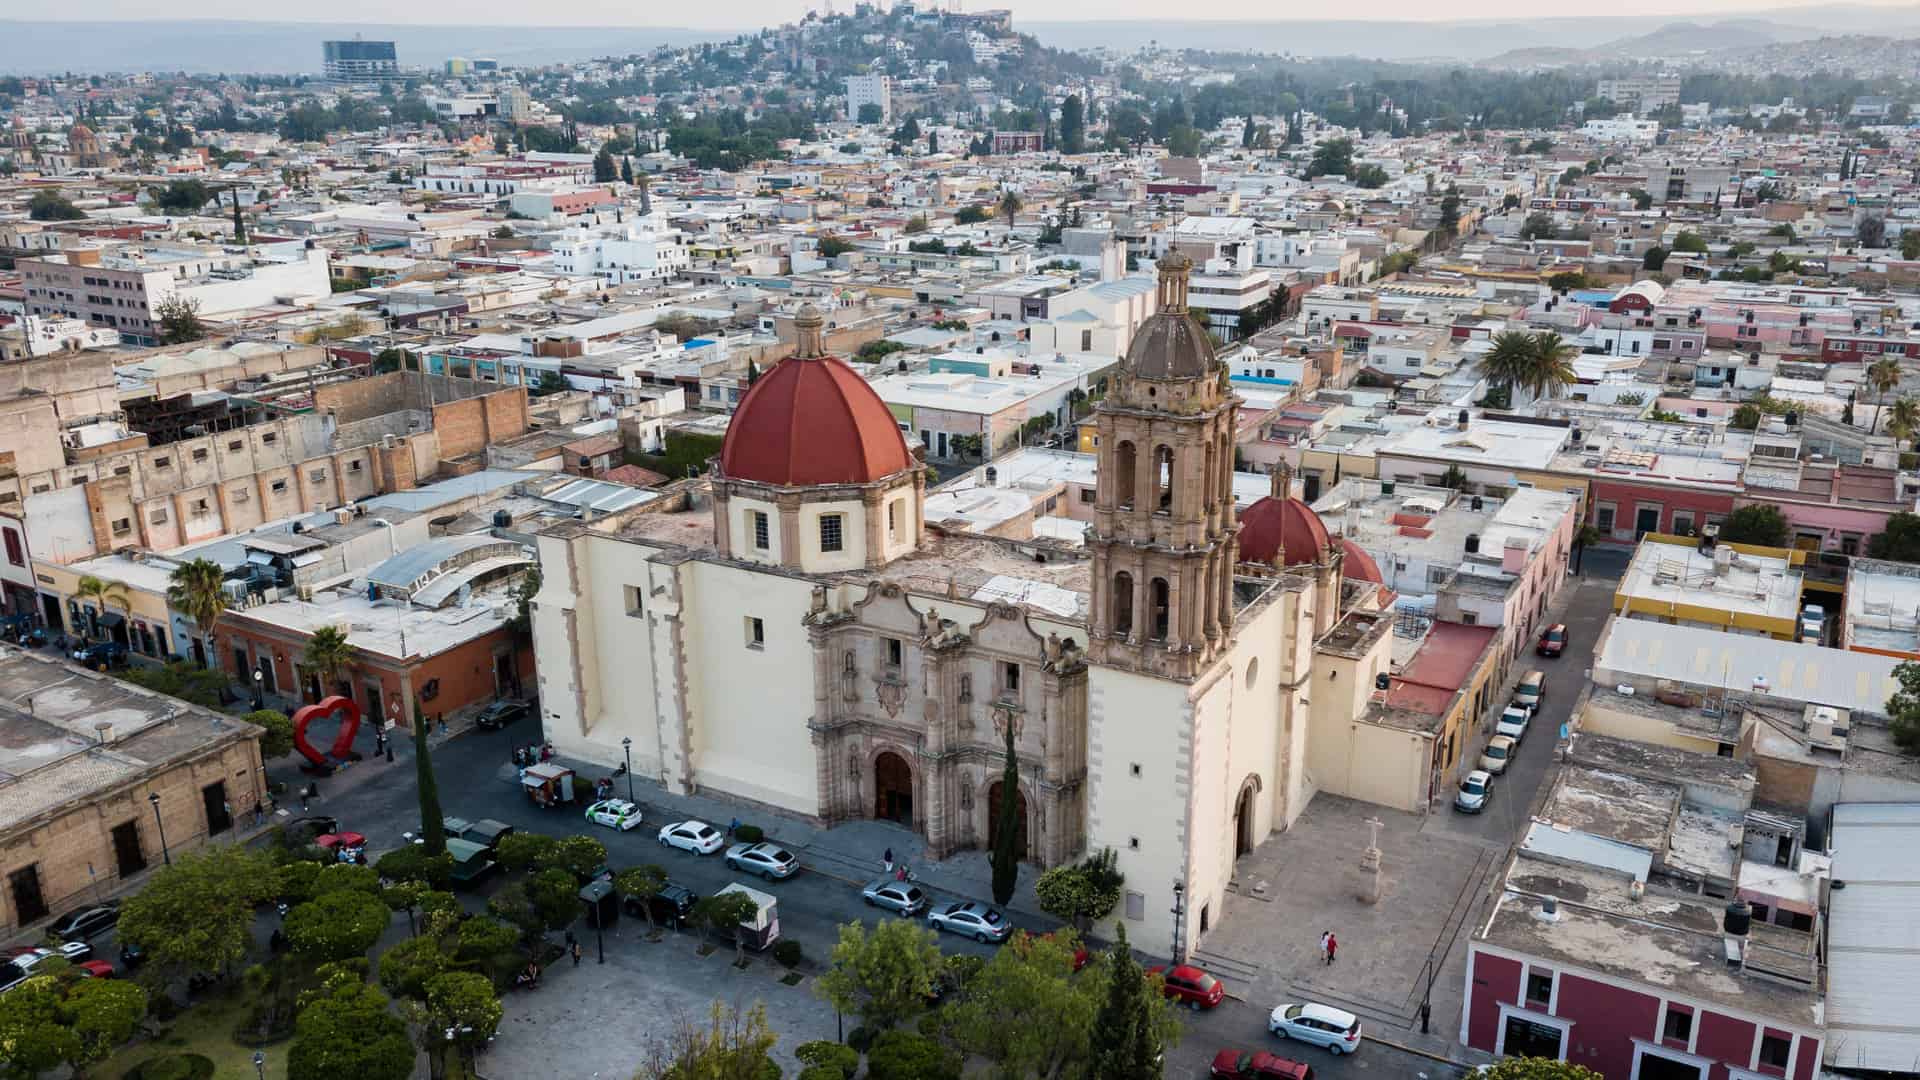 vista aerea de un iglesia de la ciudad de durango que es una localidad con sucursales de megacable